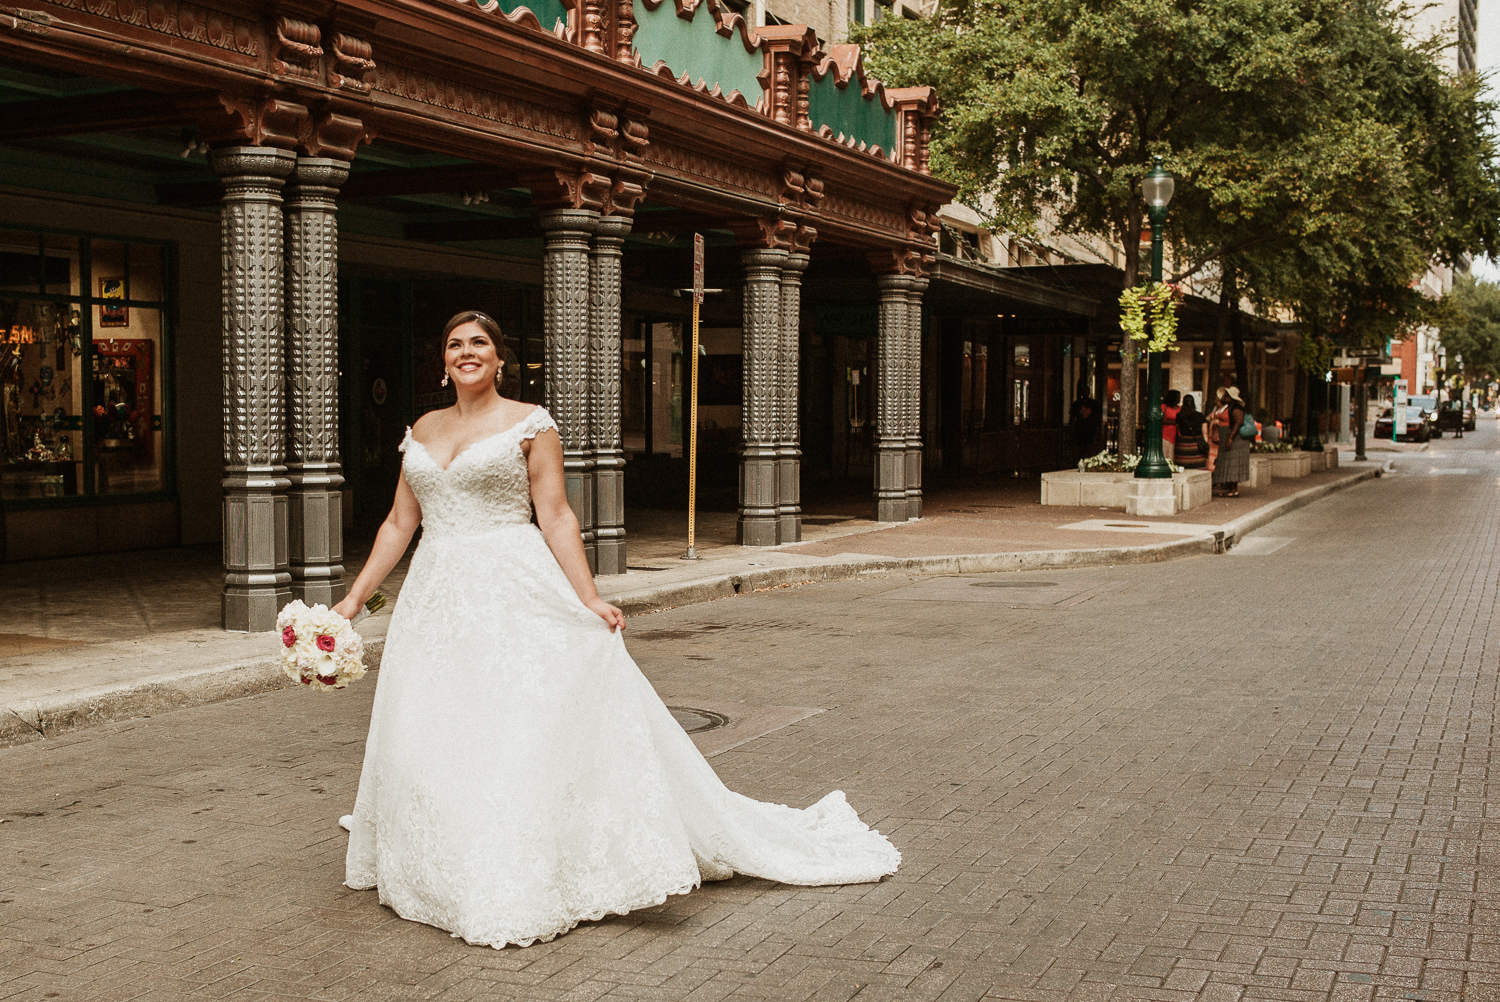 Clarissa on her bridal shoot day downtown on Houston Street, San Antonio, Texas